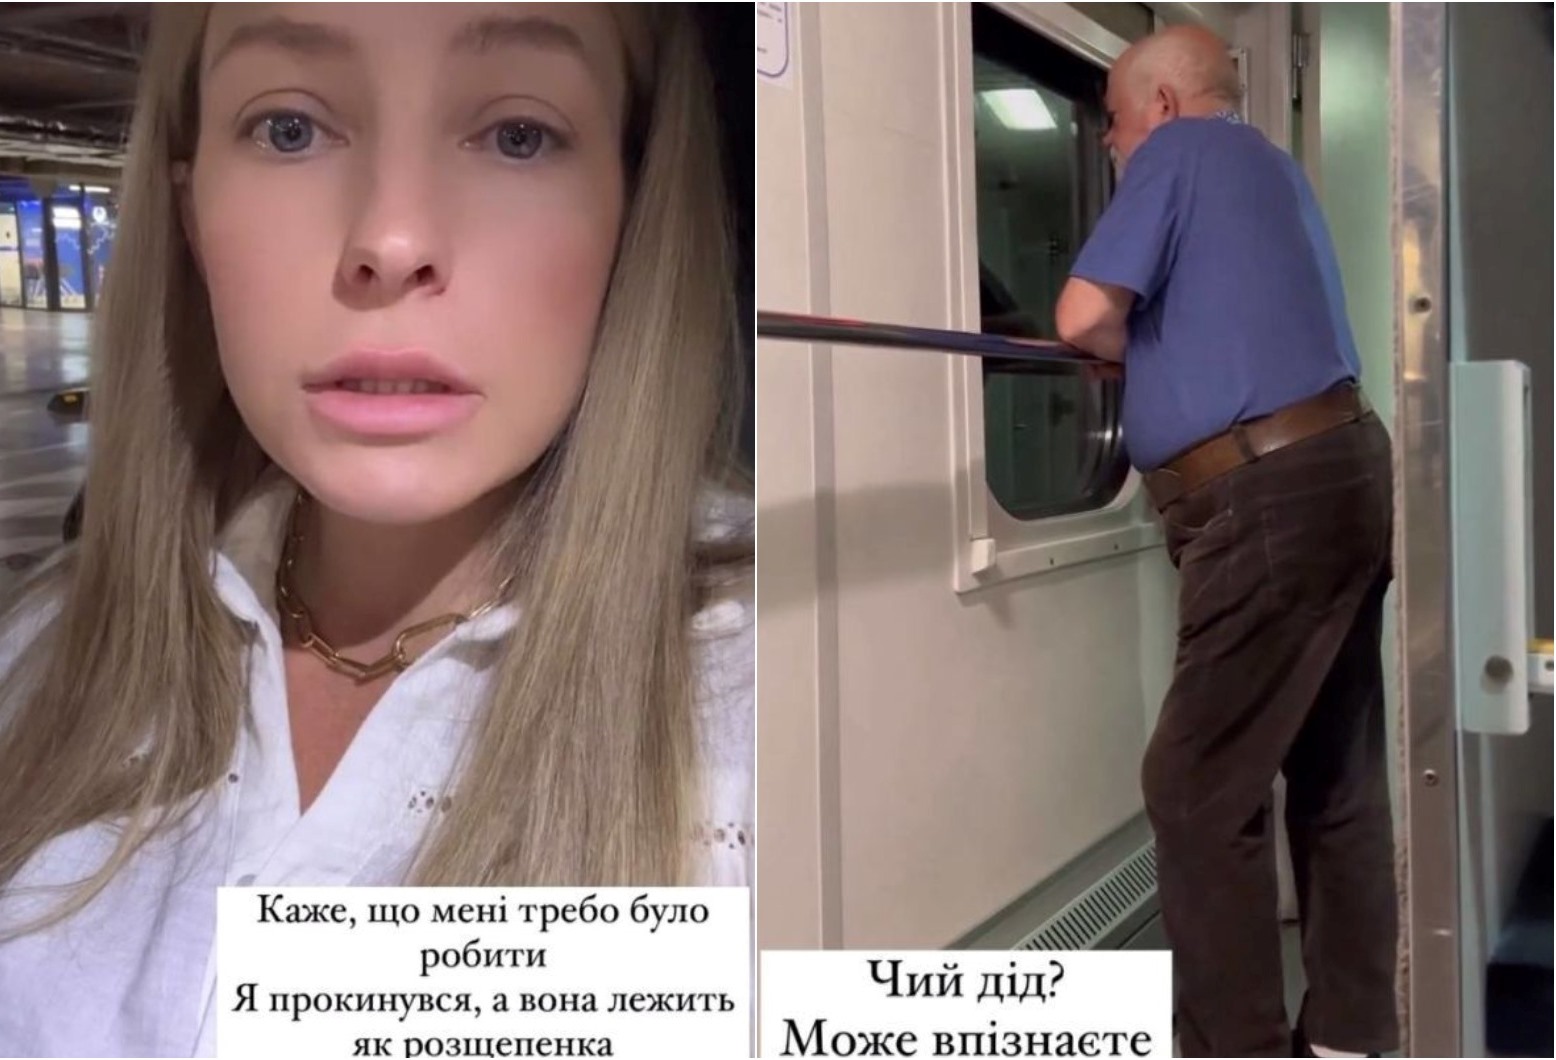 “Чий дід? Може впізнаєте?“: літній пассажир чіплявся з поцілунками до жінки у поїзді Укрзалізниці